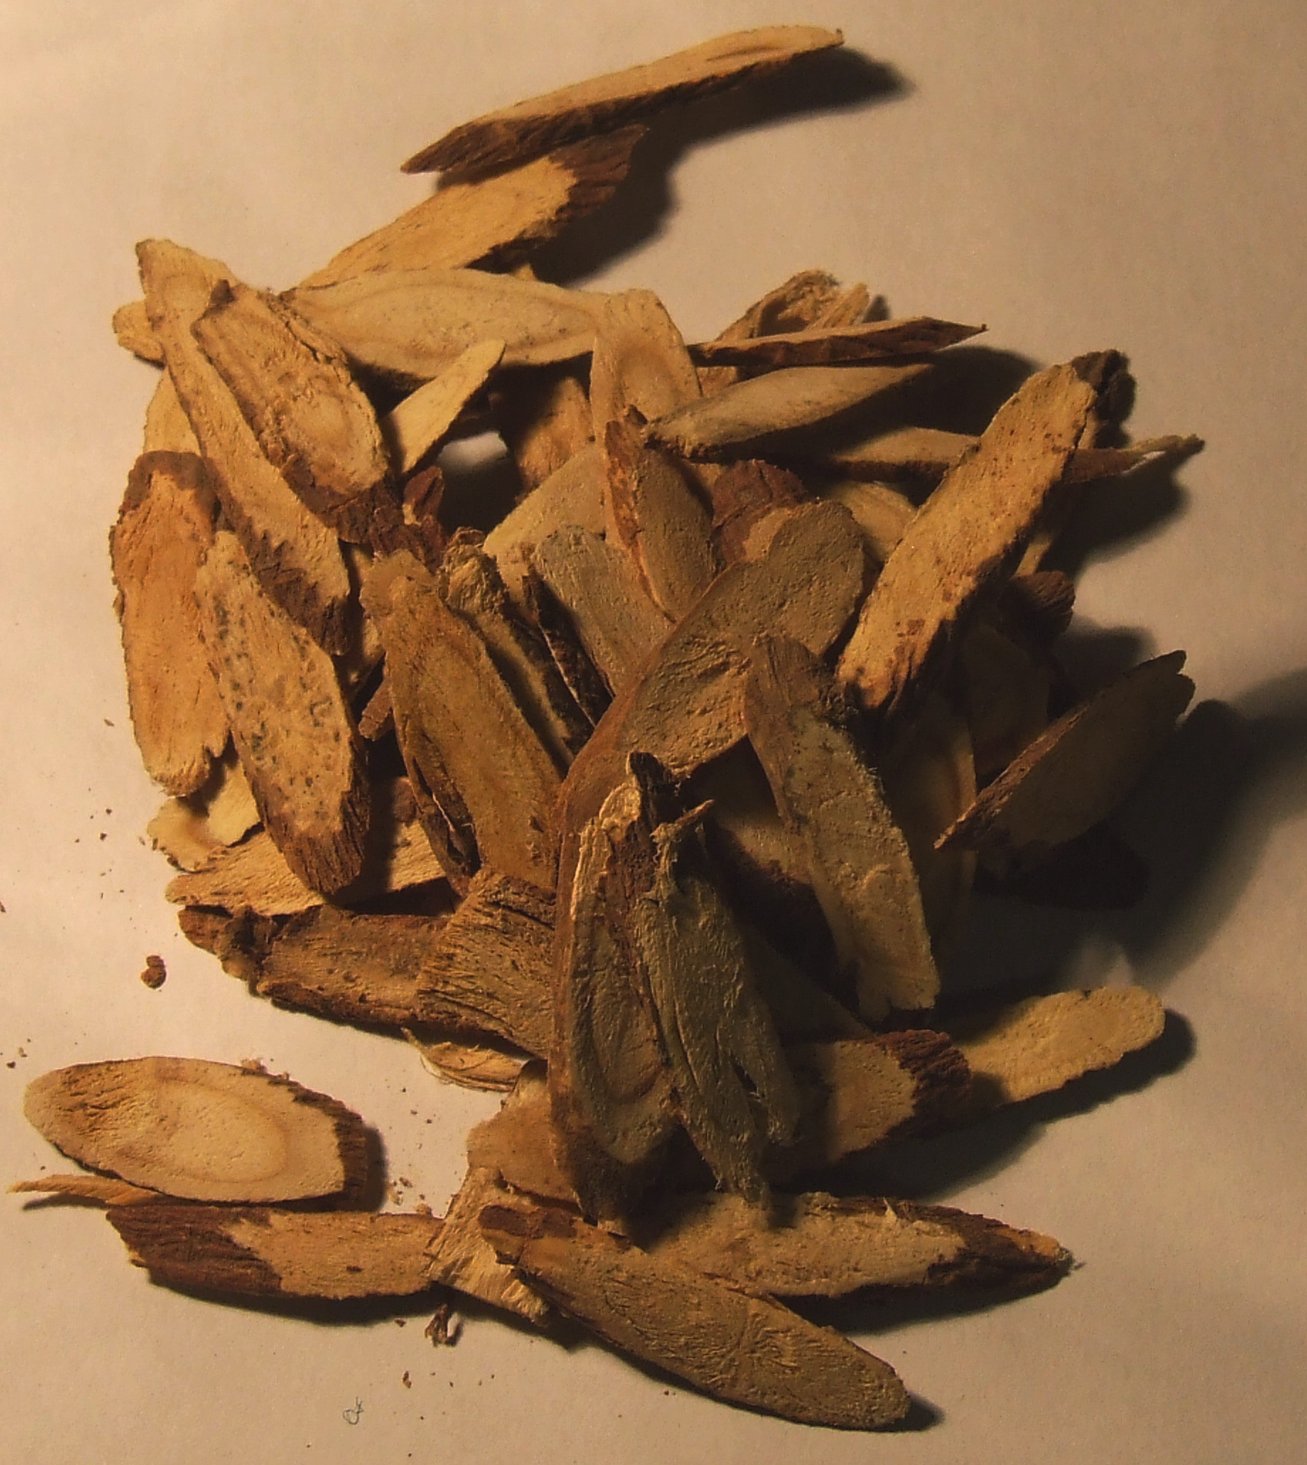 Foto de um porção de fatias de raiz de alcaçuz